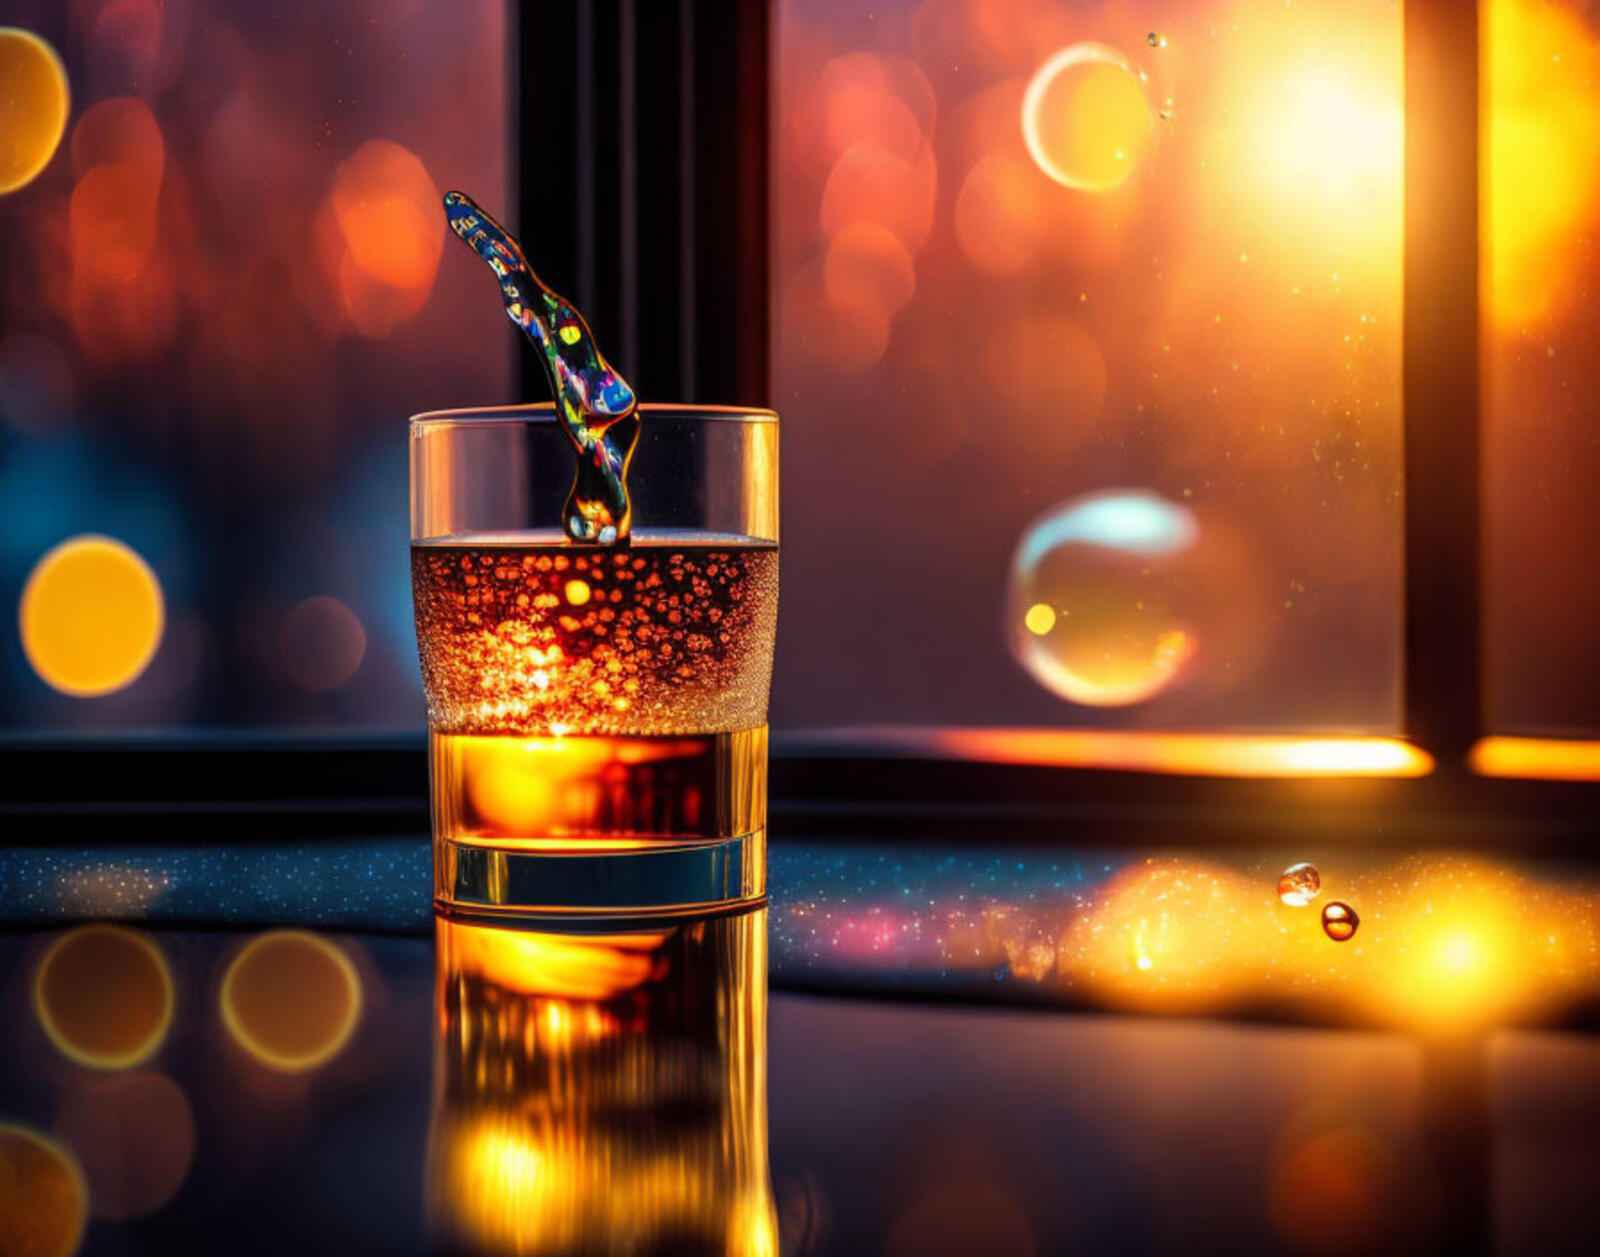 Бесплатное фото Капли жидкости в стакане